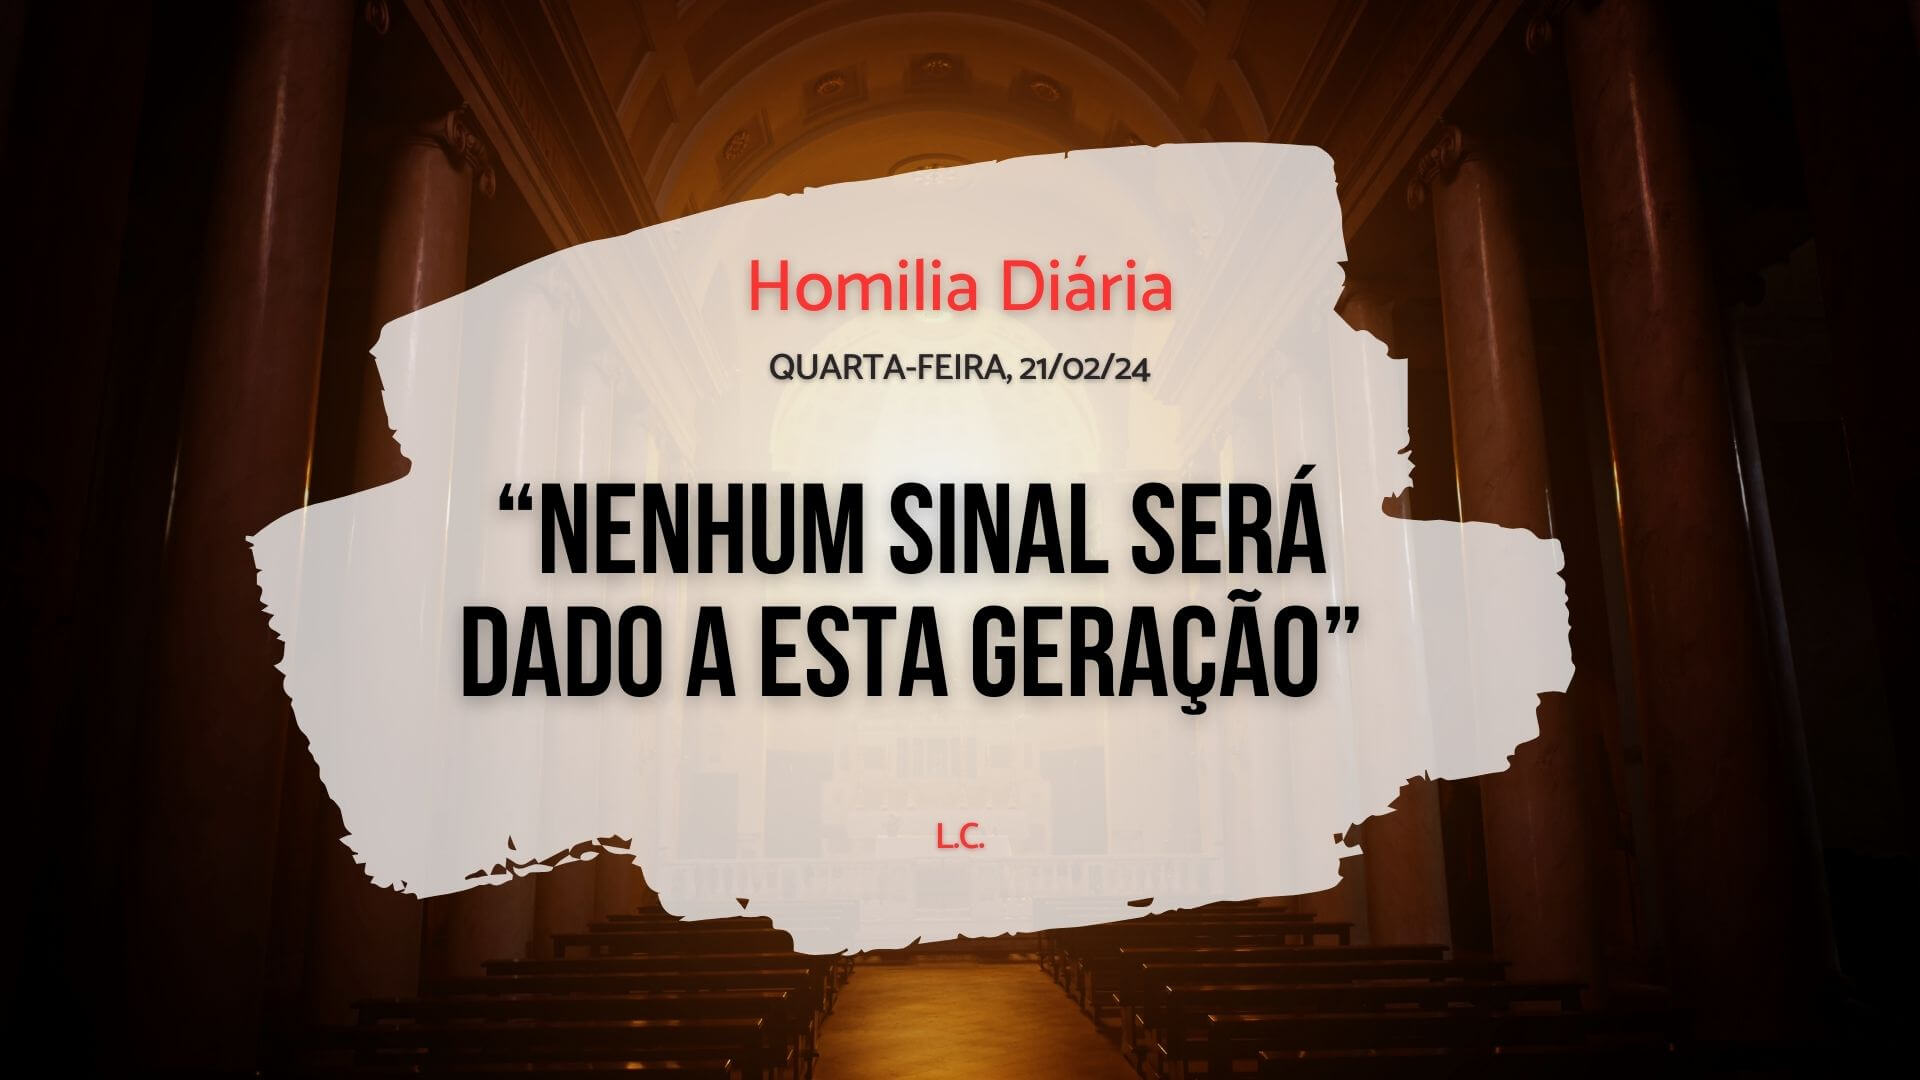 Homilia Diária - Evangelho de hoje - LC